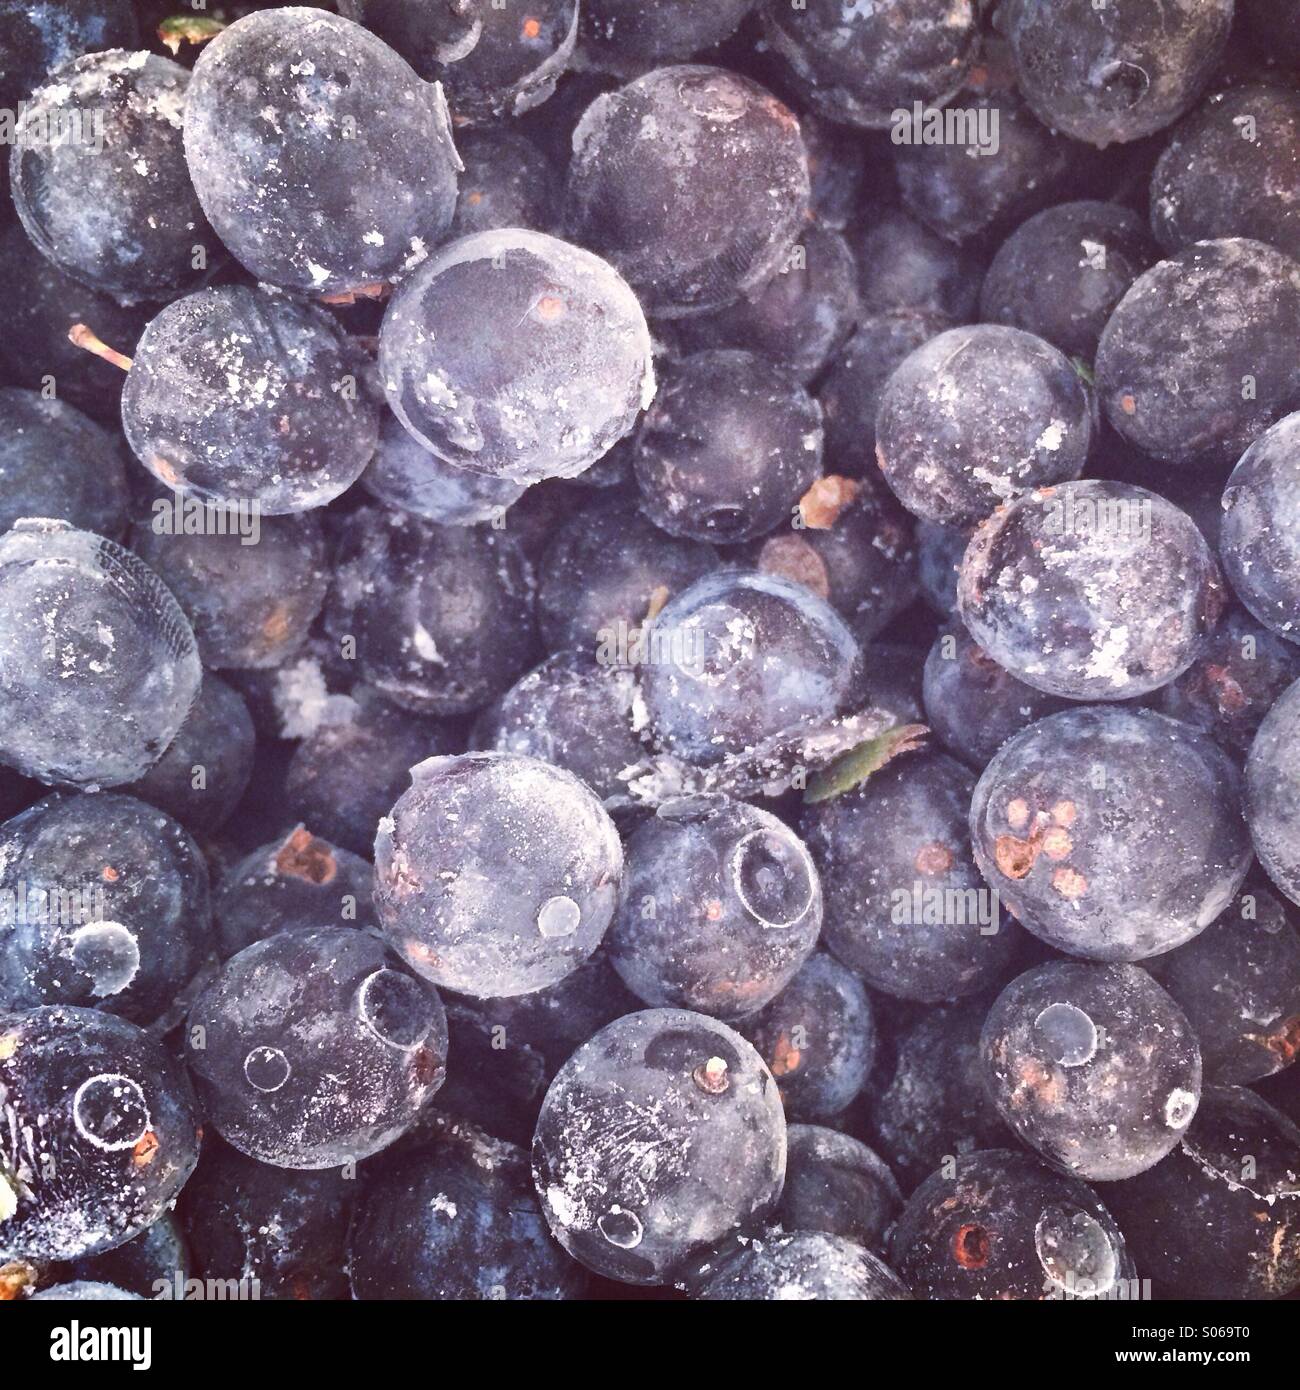 Gefrorene Schlehen bereit für Gin Stockfotografie - Alamy